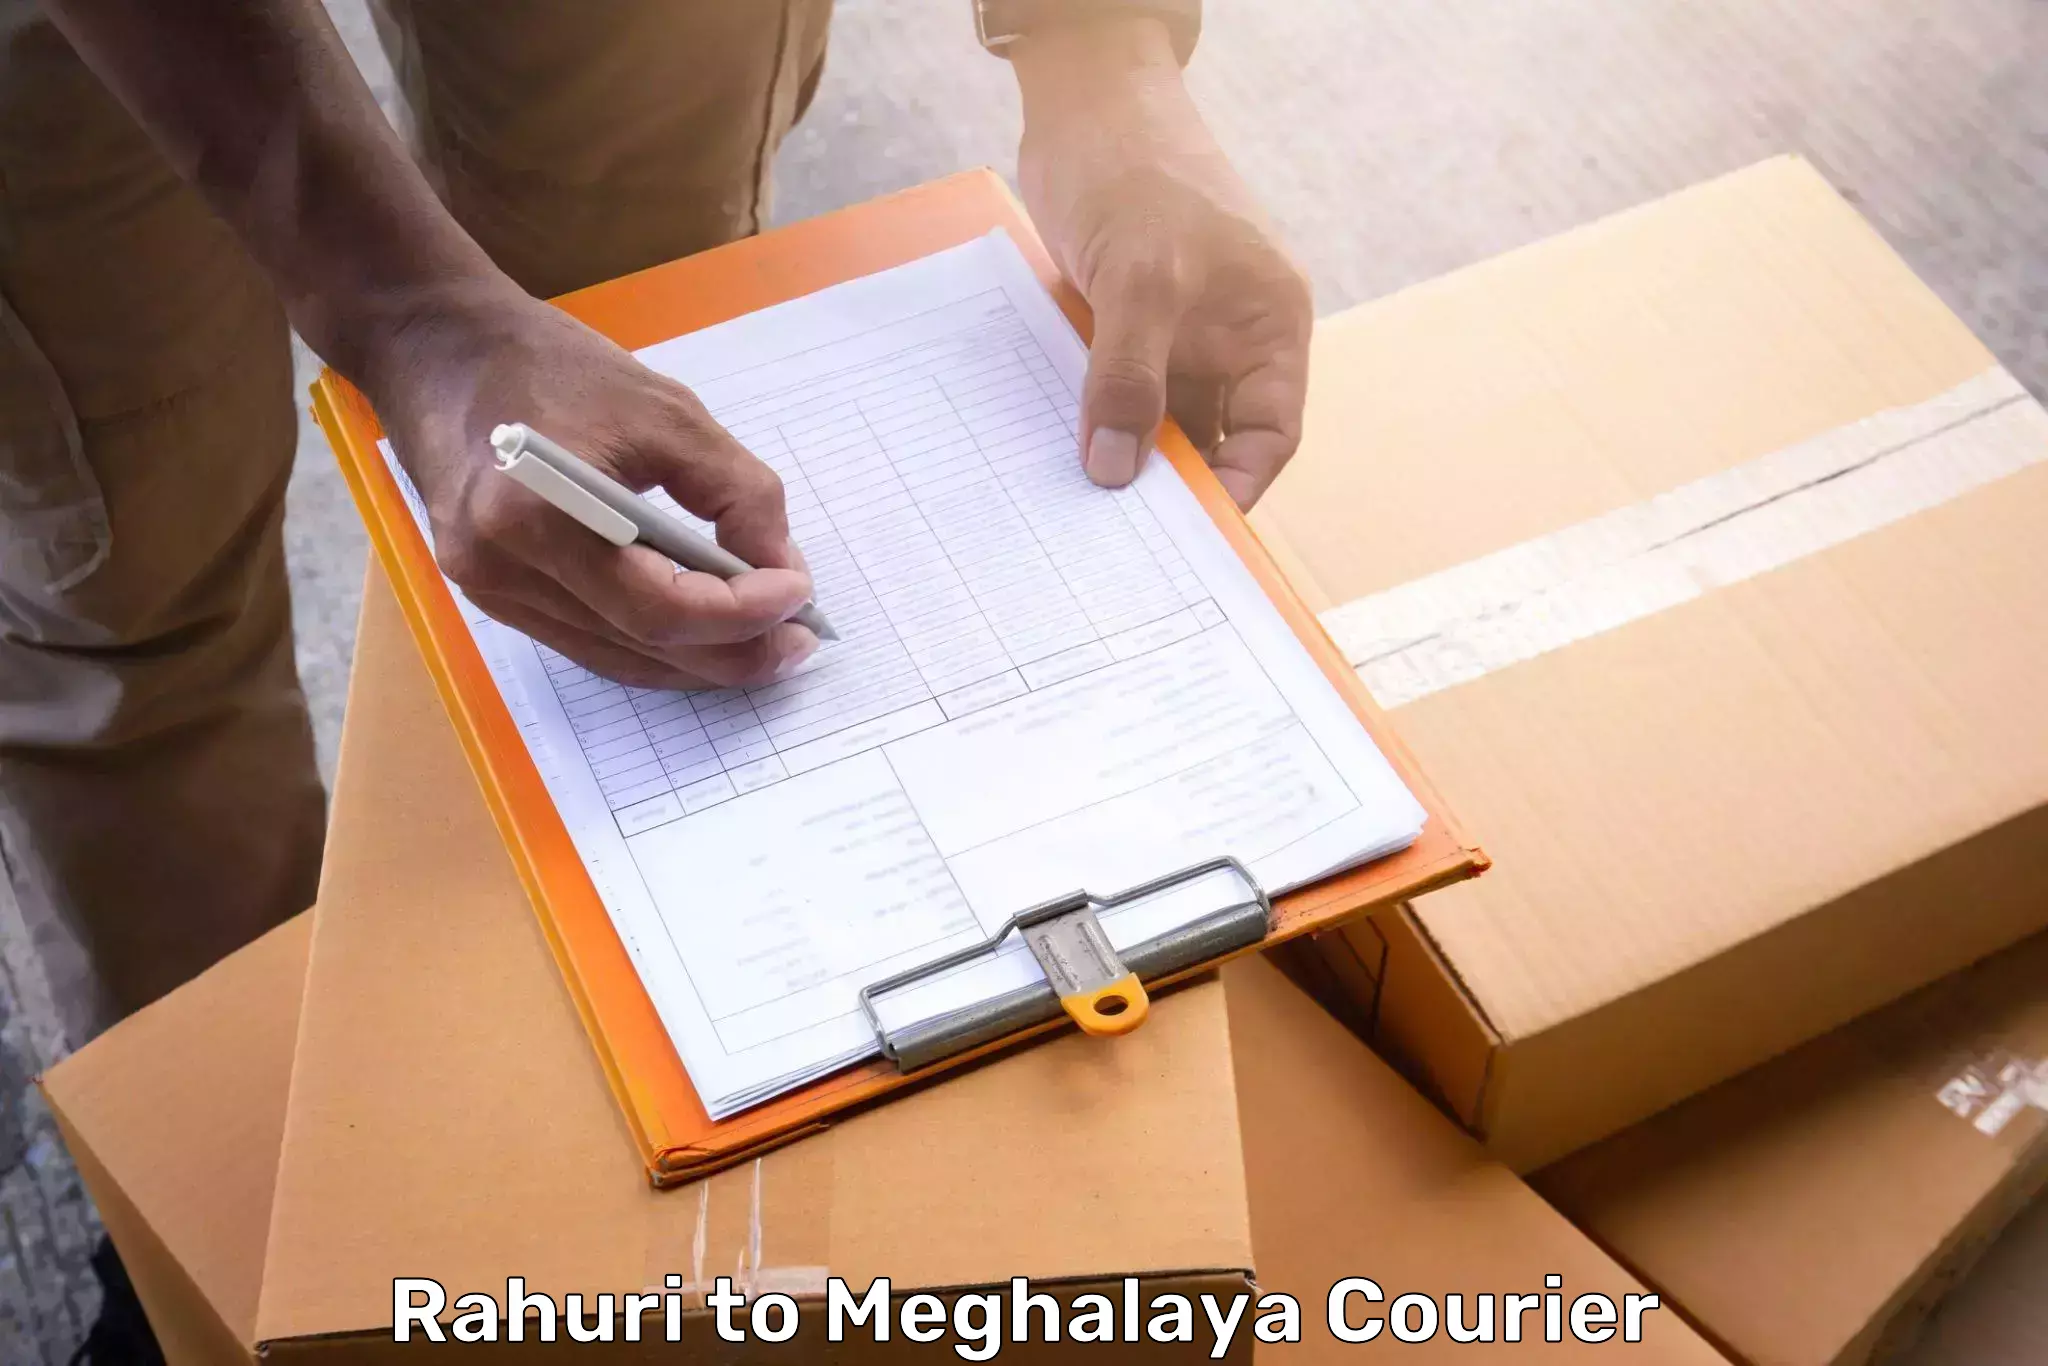 Baggage transport management Rahuri to Meghalaya